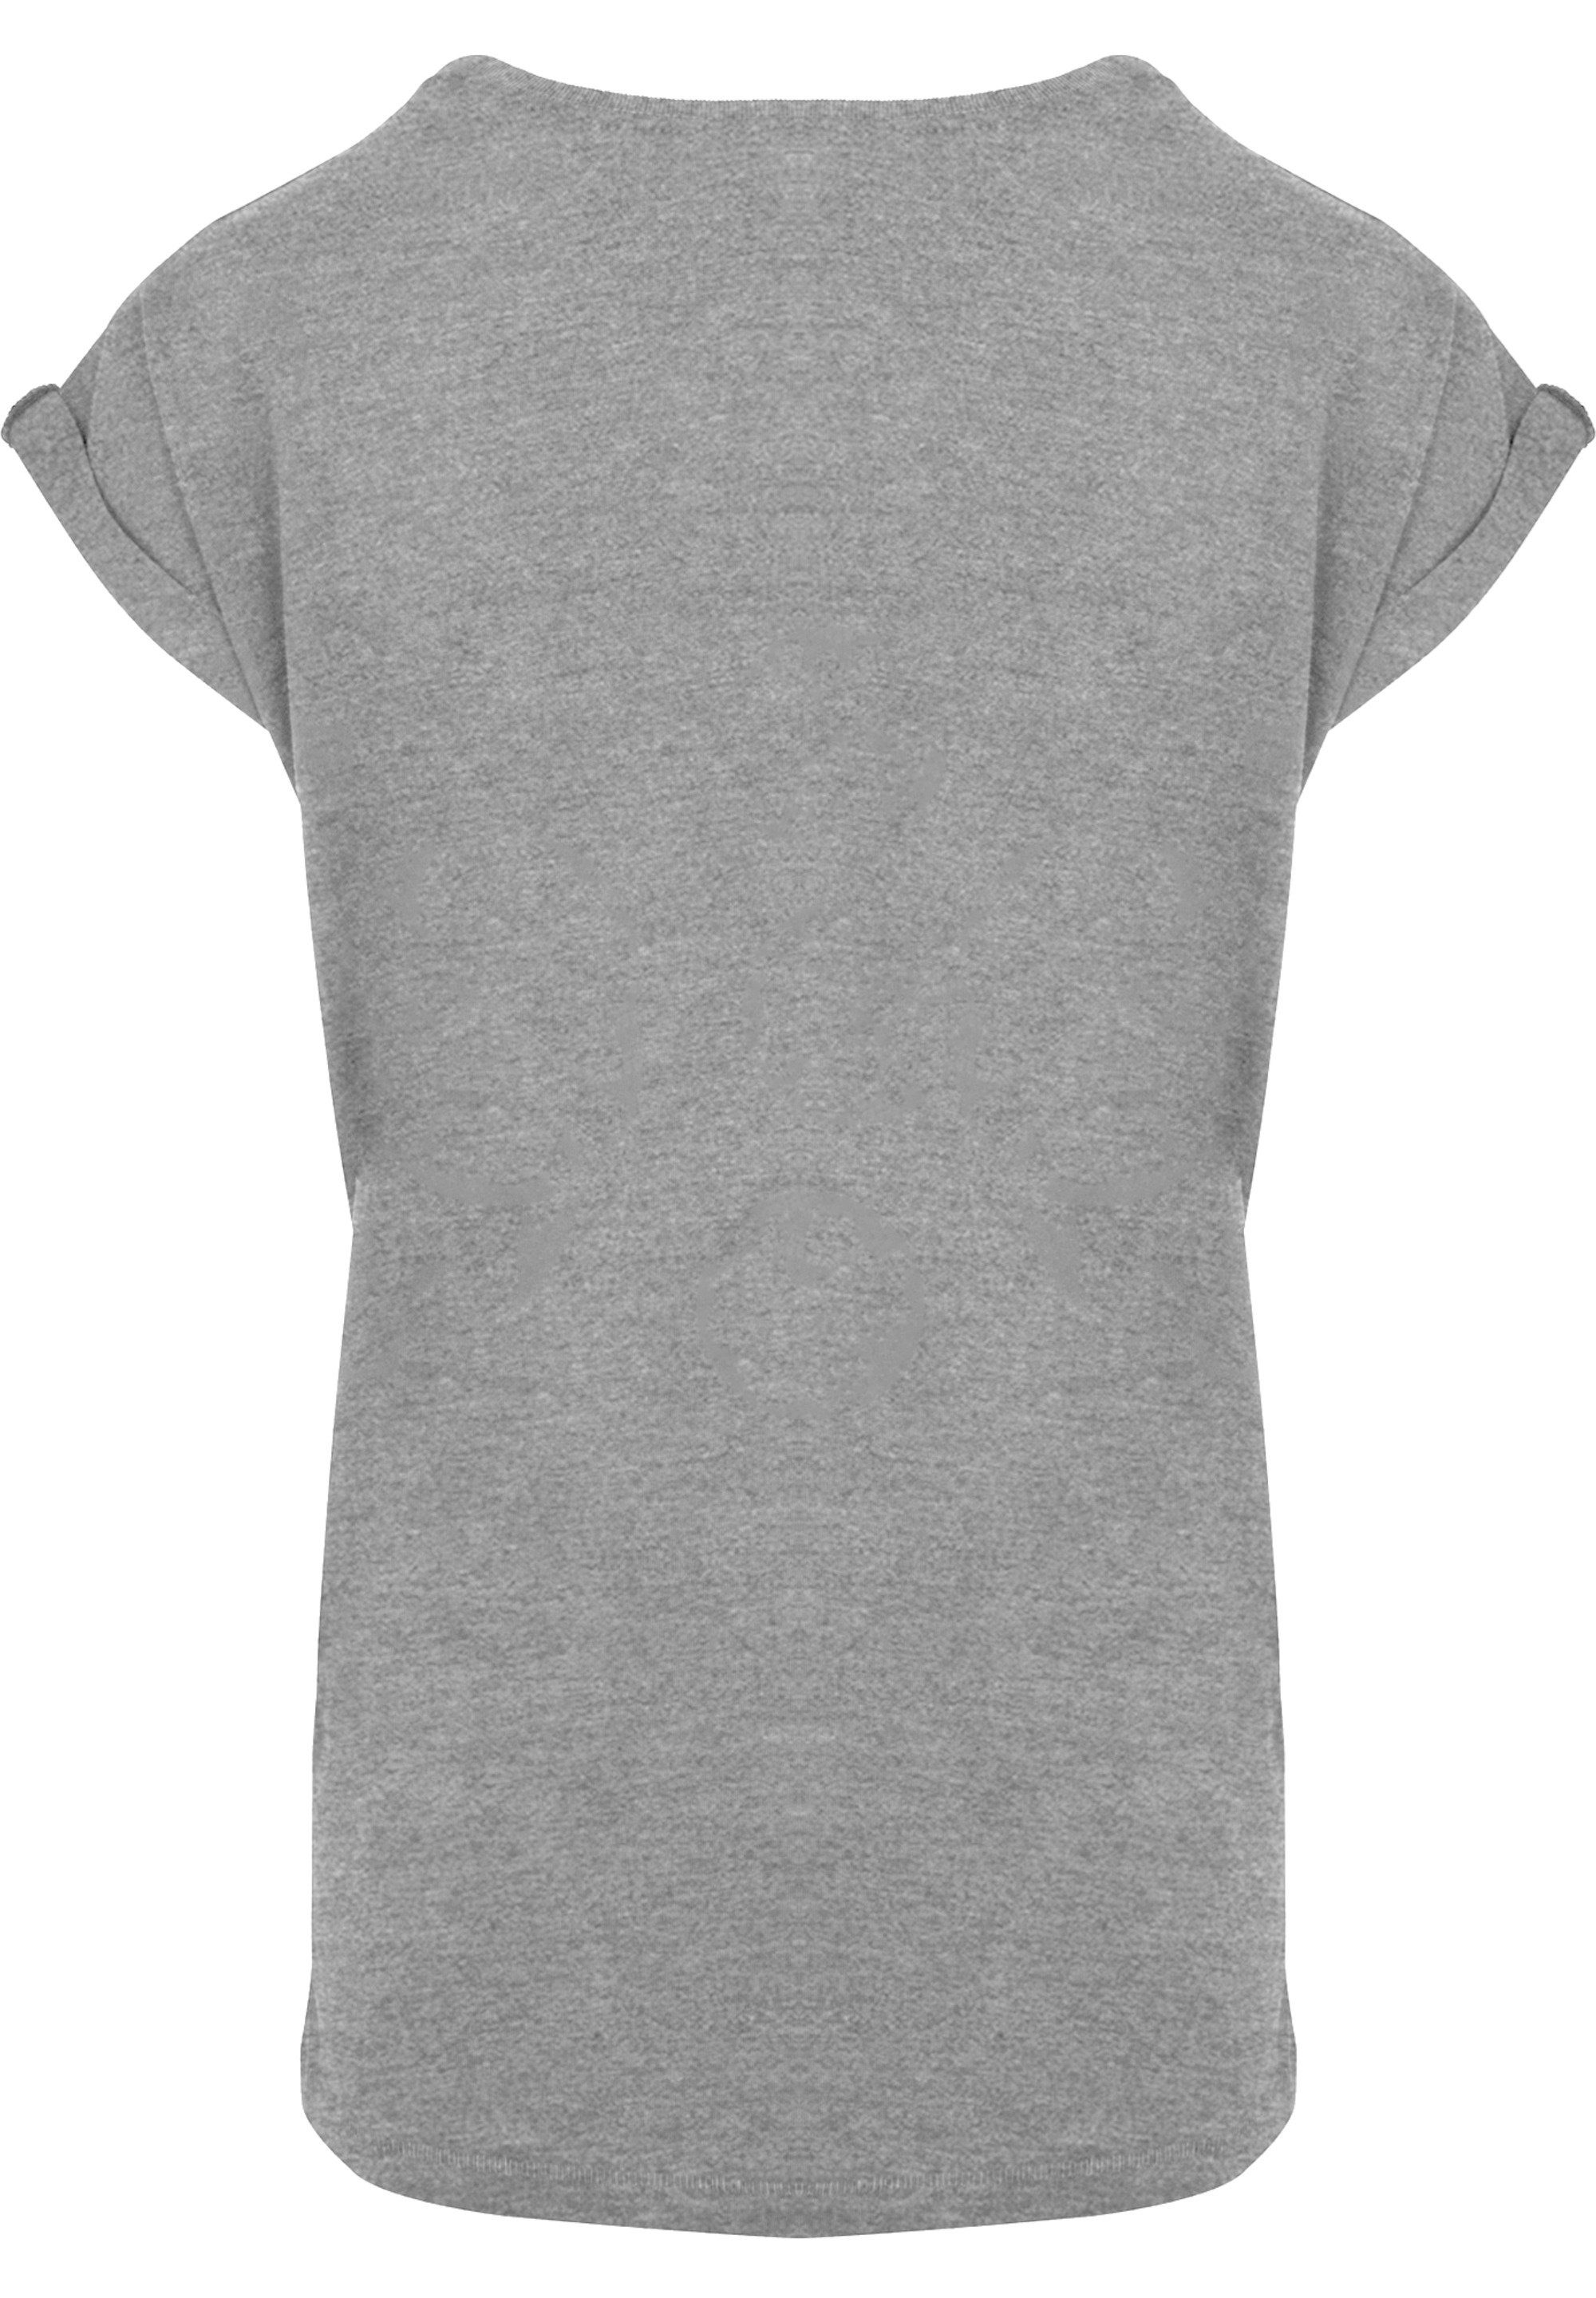 Bär Print Puuh Sketch heather Collage Der F4NT4STIC T-Shirt Winnie grey